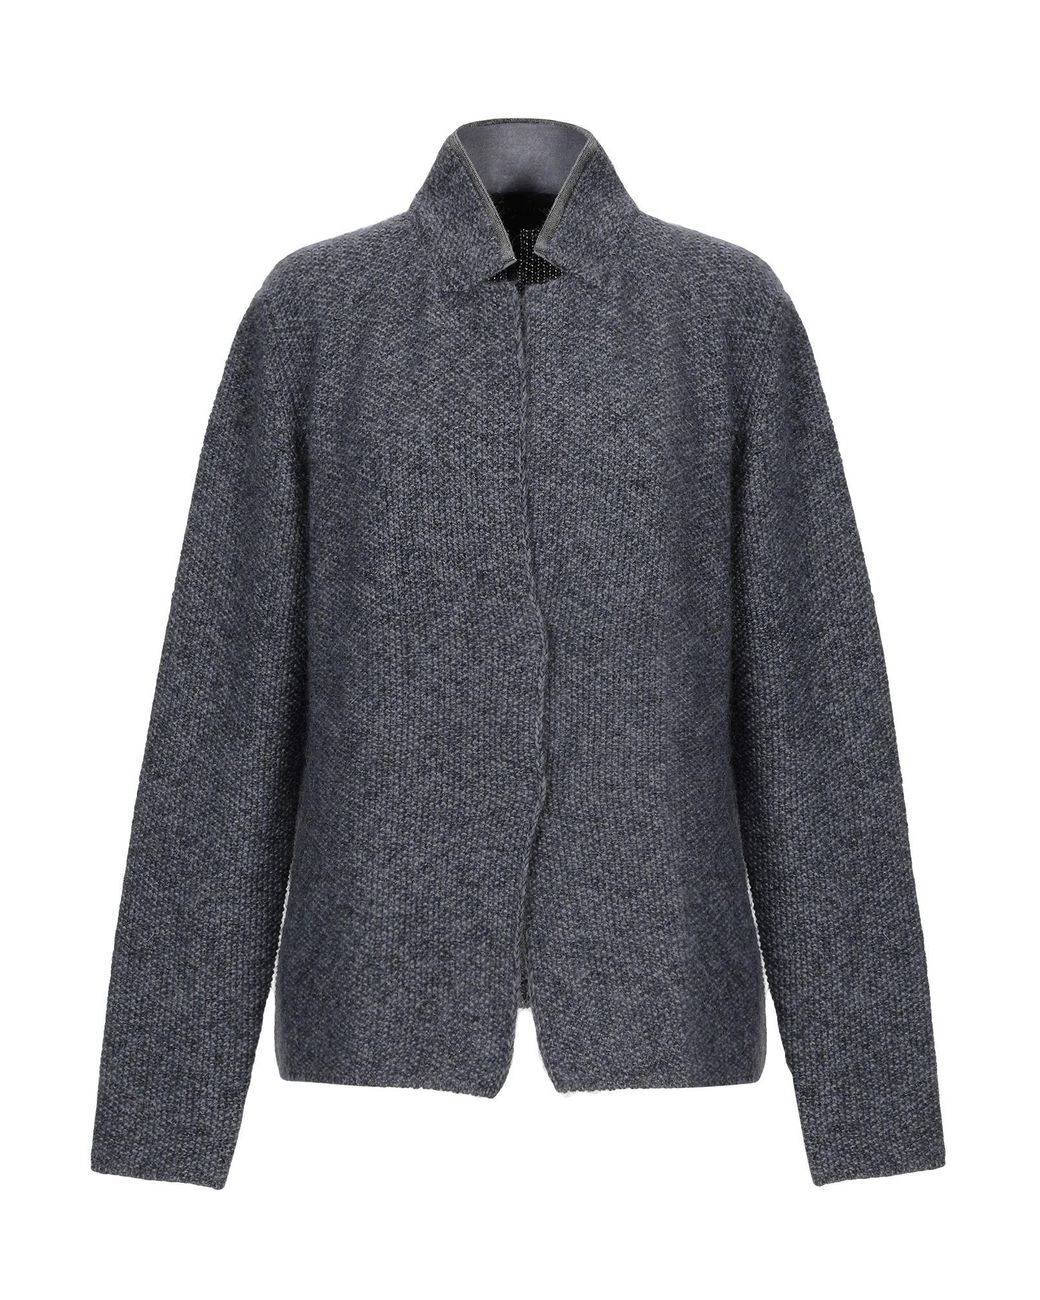 Fabiana Filippi Wool Suit Jacket in Lead (Gray) - Lyst